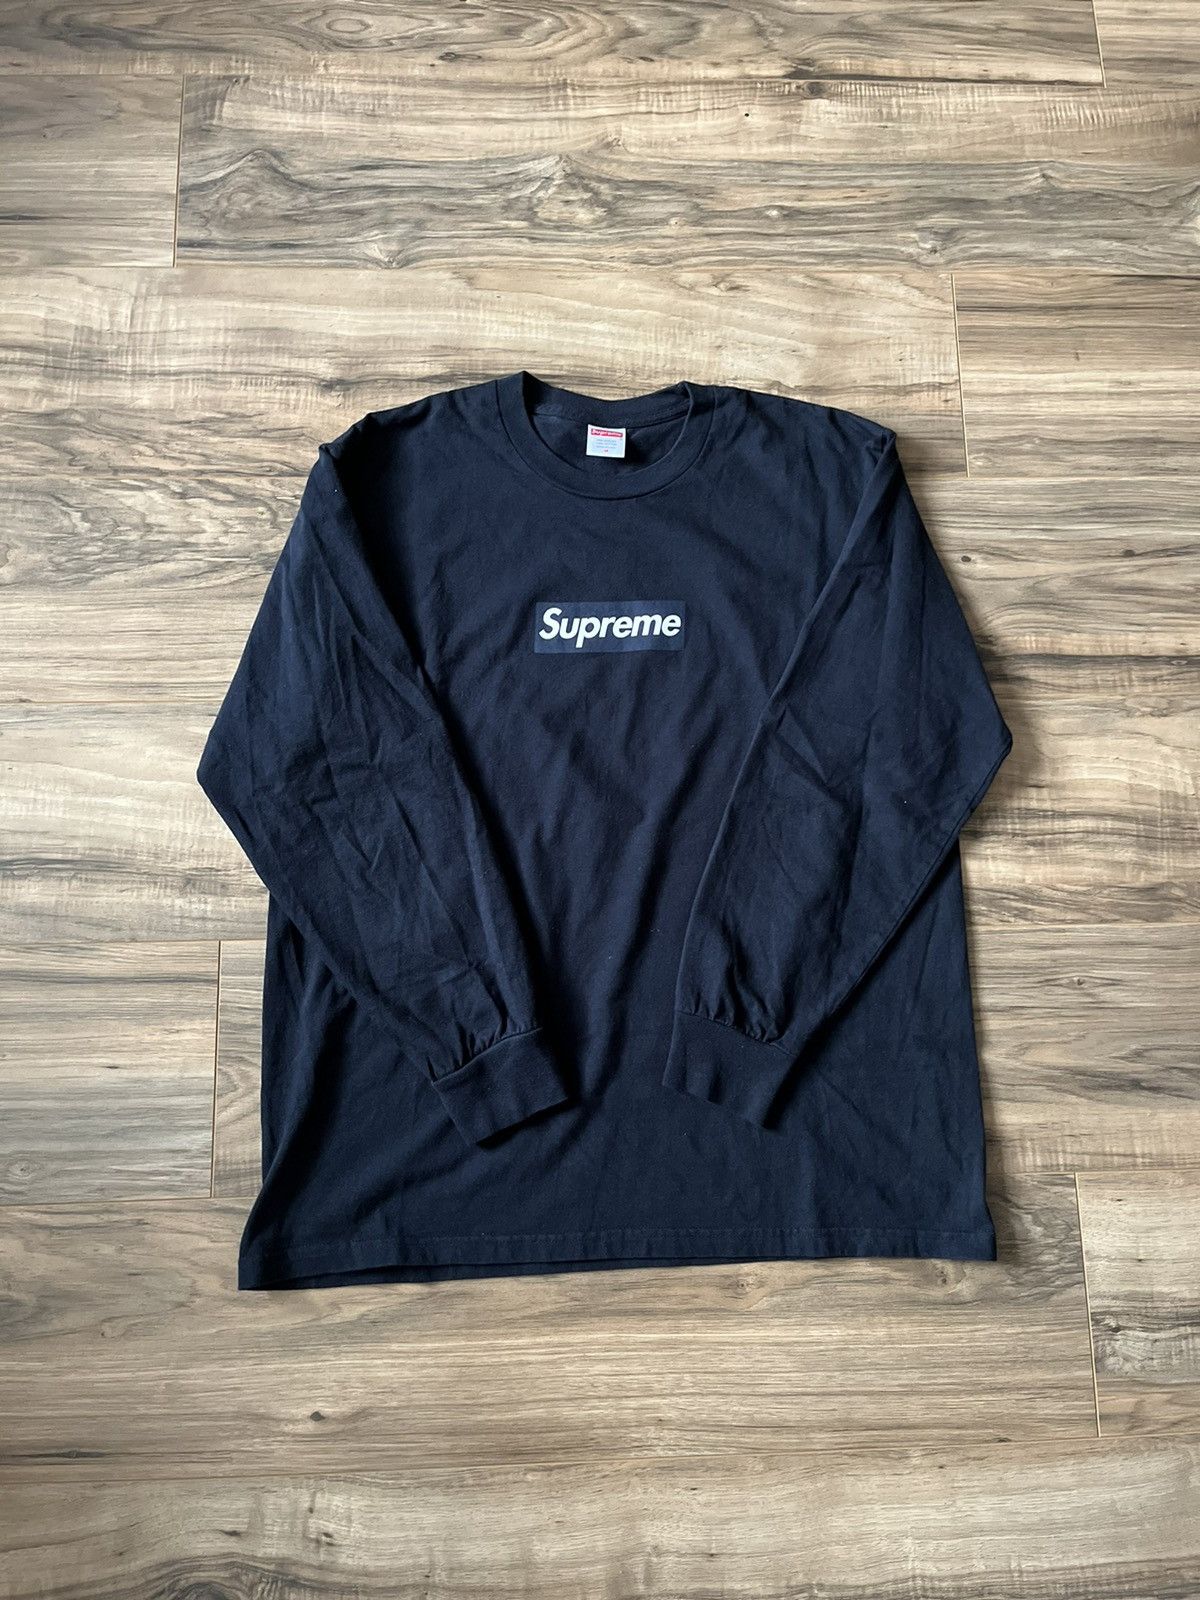 Supreme Supreme Box Logo L/S Tee | Grailed